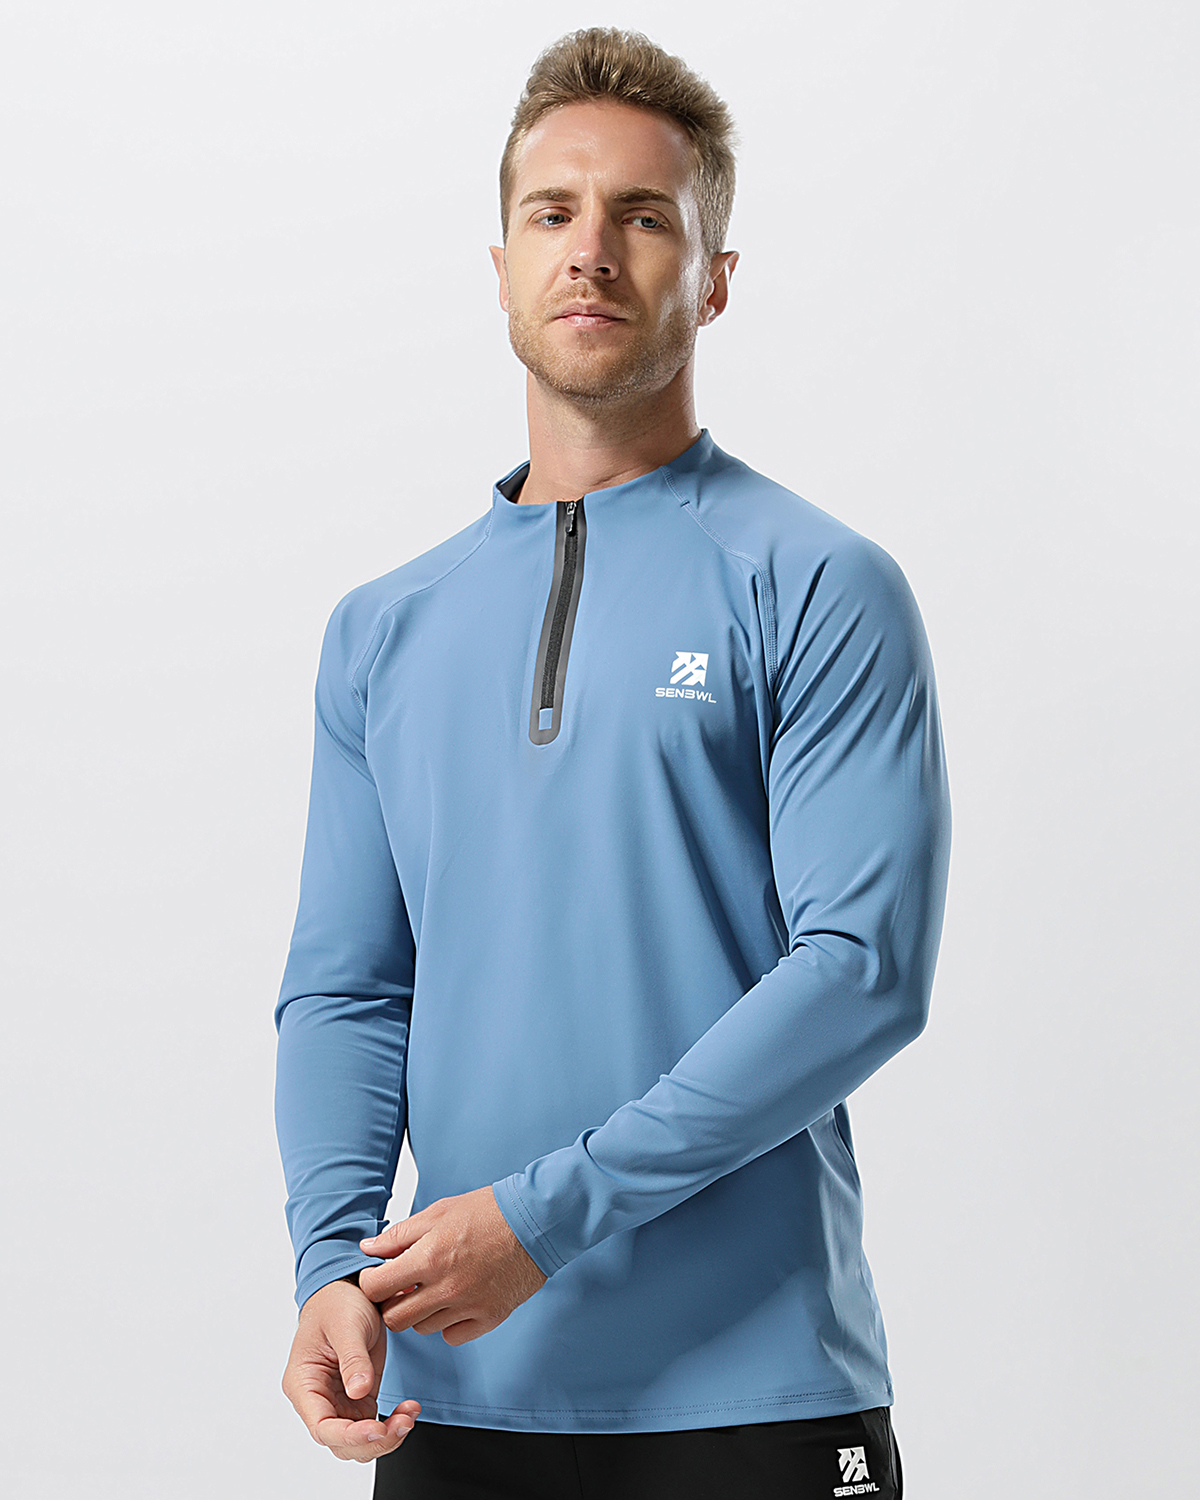 Senbwl Men's Quick Drying High Stretch Long Sleeve Polo Shirts -Senbwl Sports